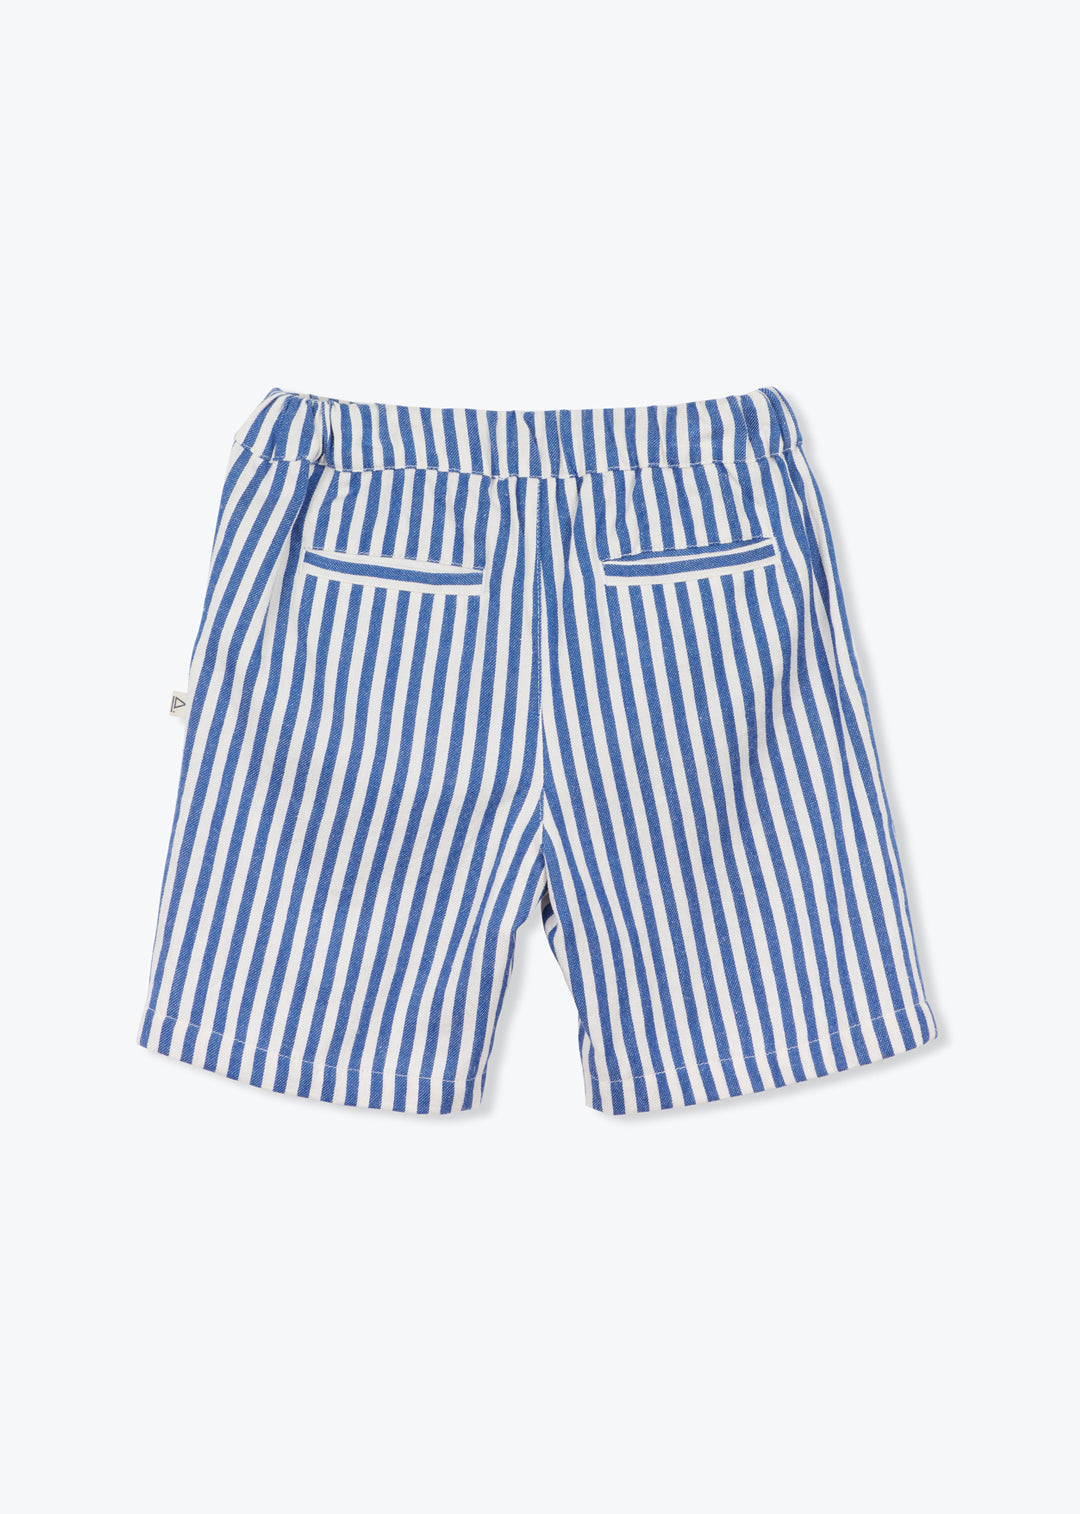 Shorts Boy Denim Stripe Navy Franck - قميص